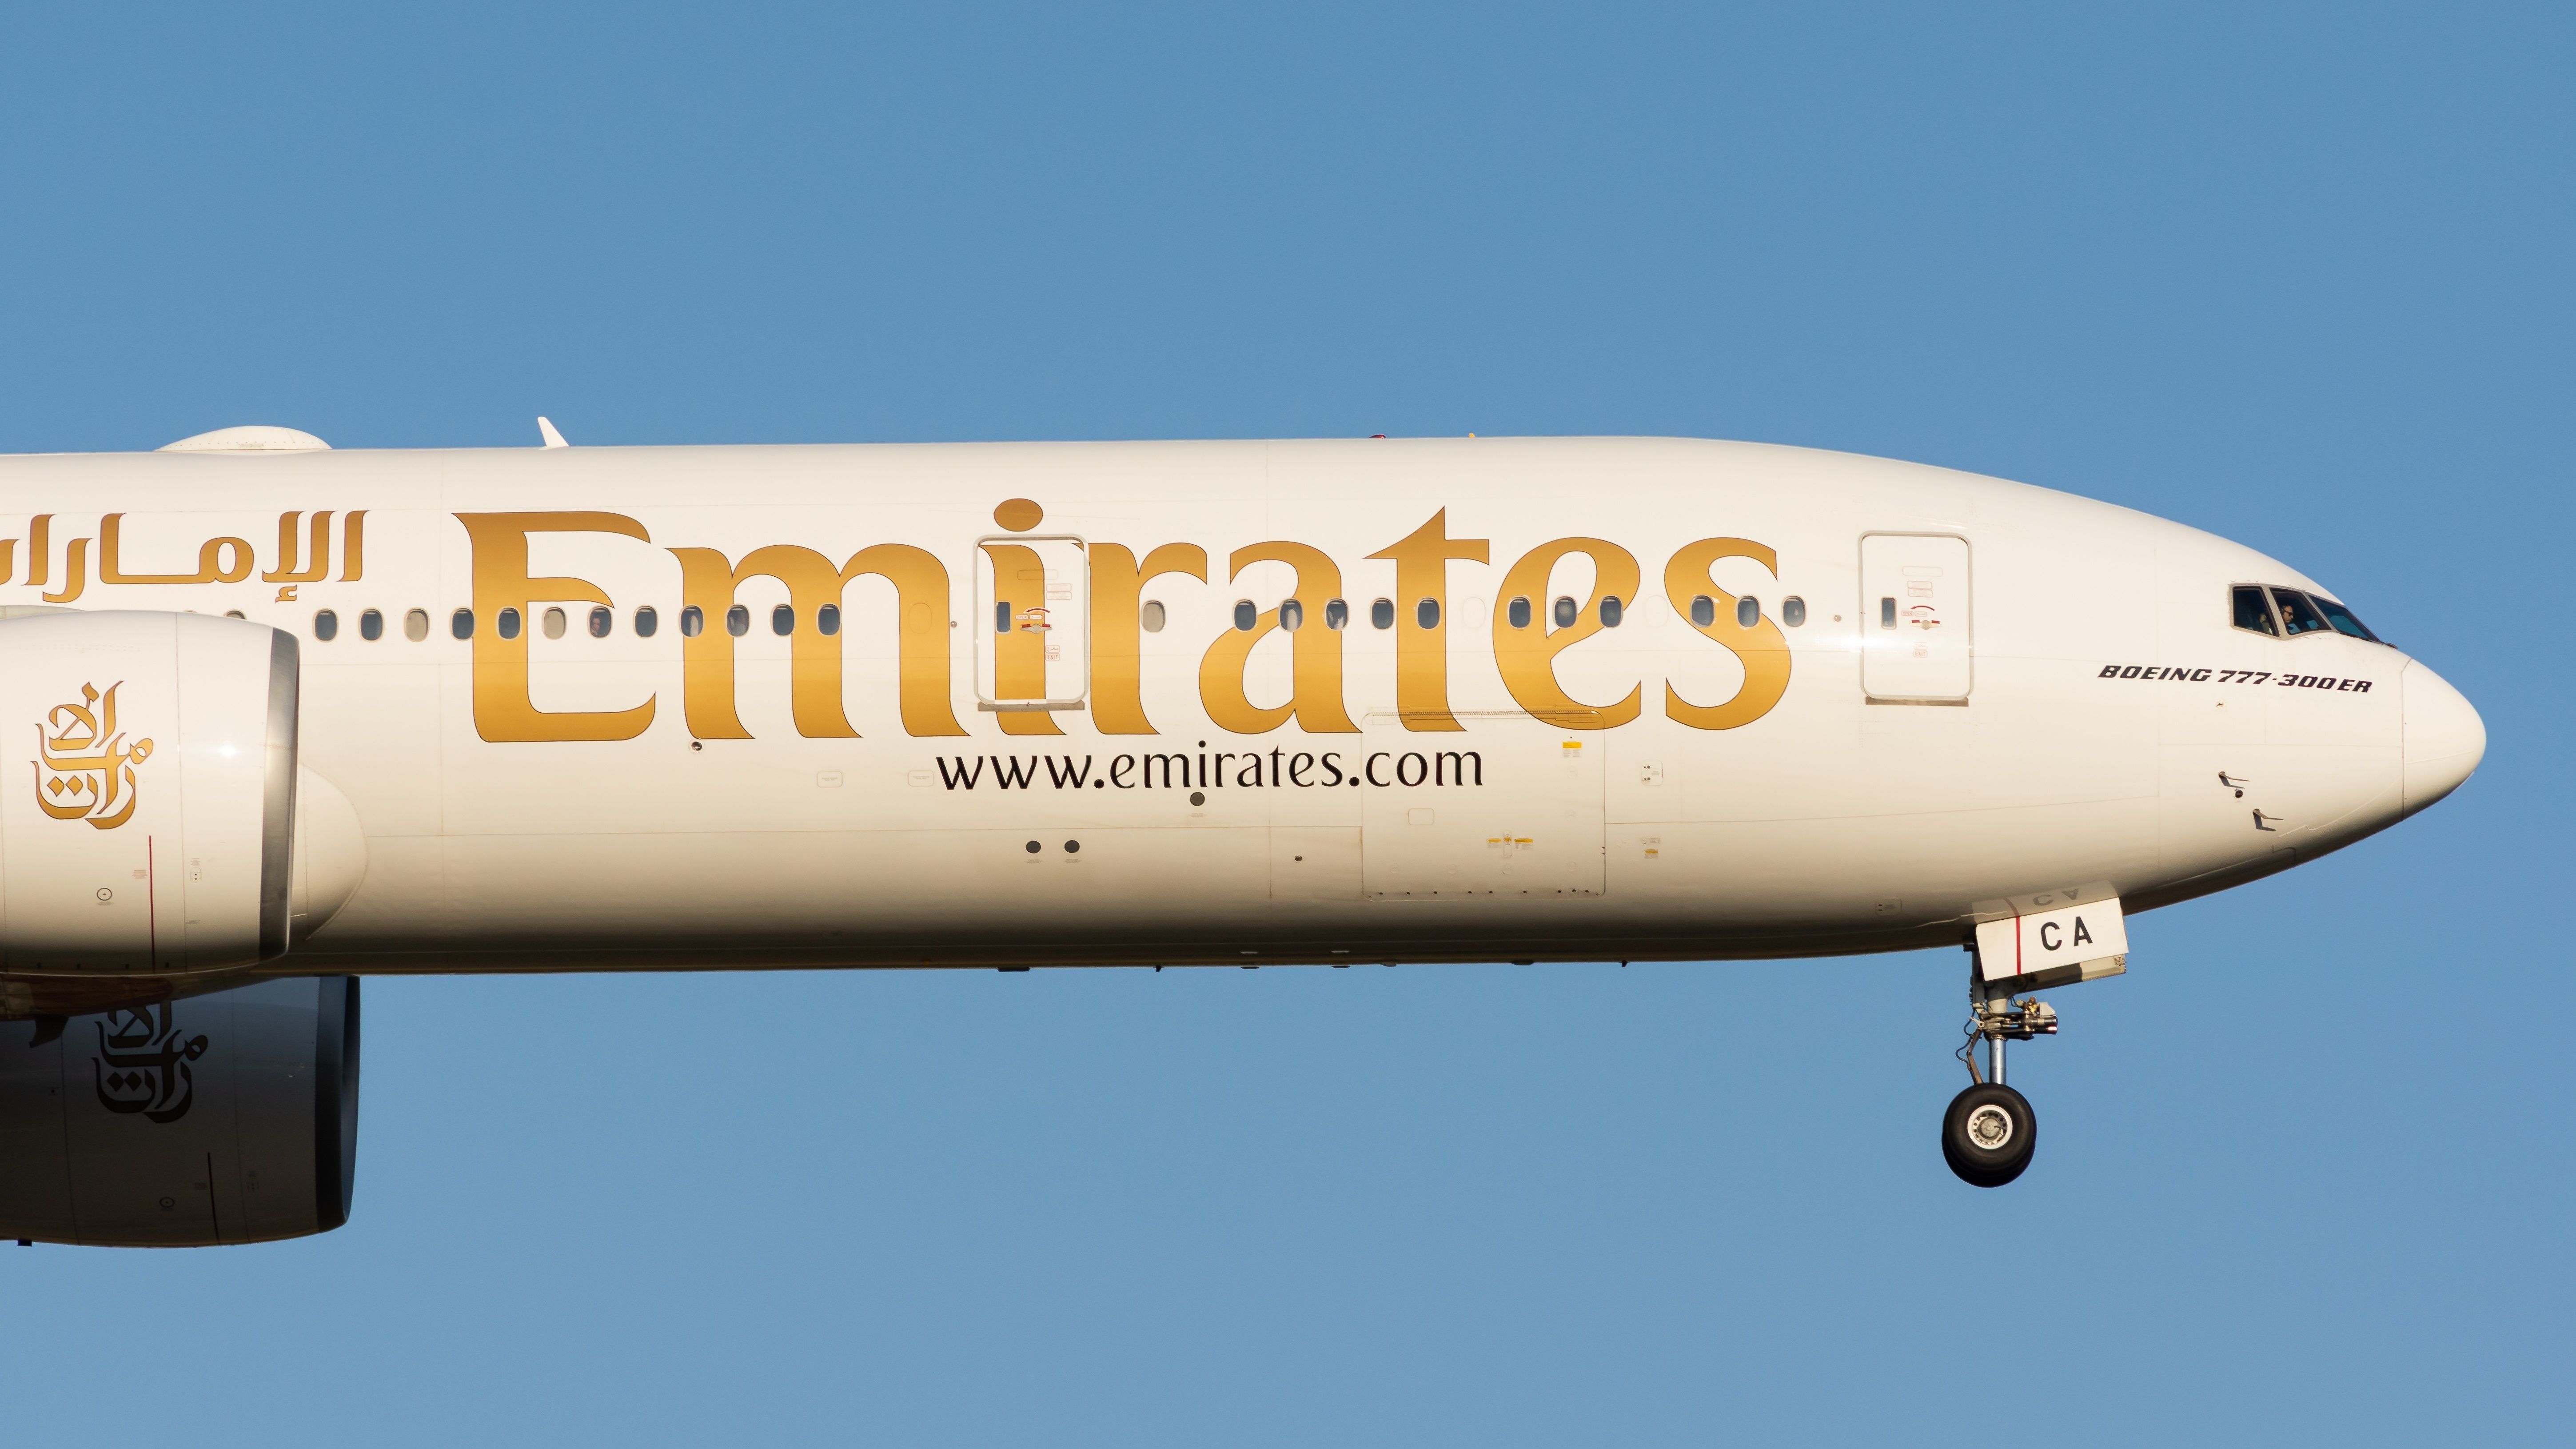 Emirates 777-300ER landing